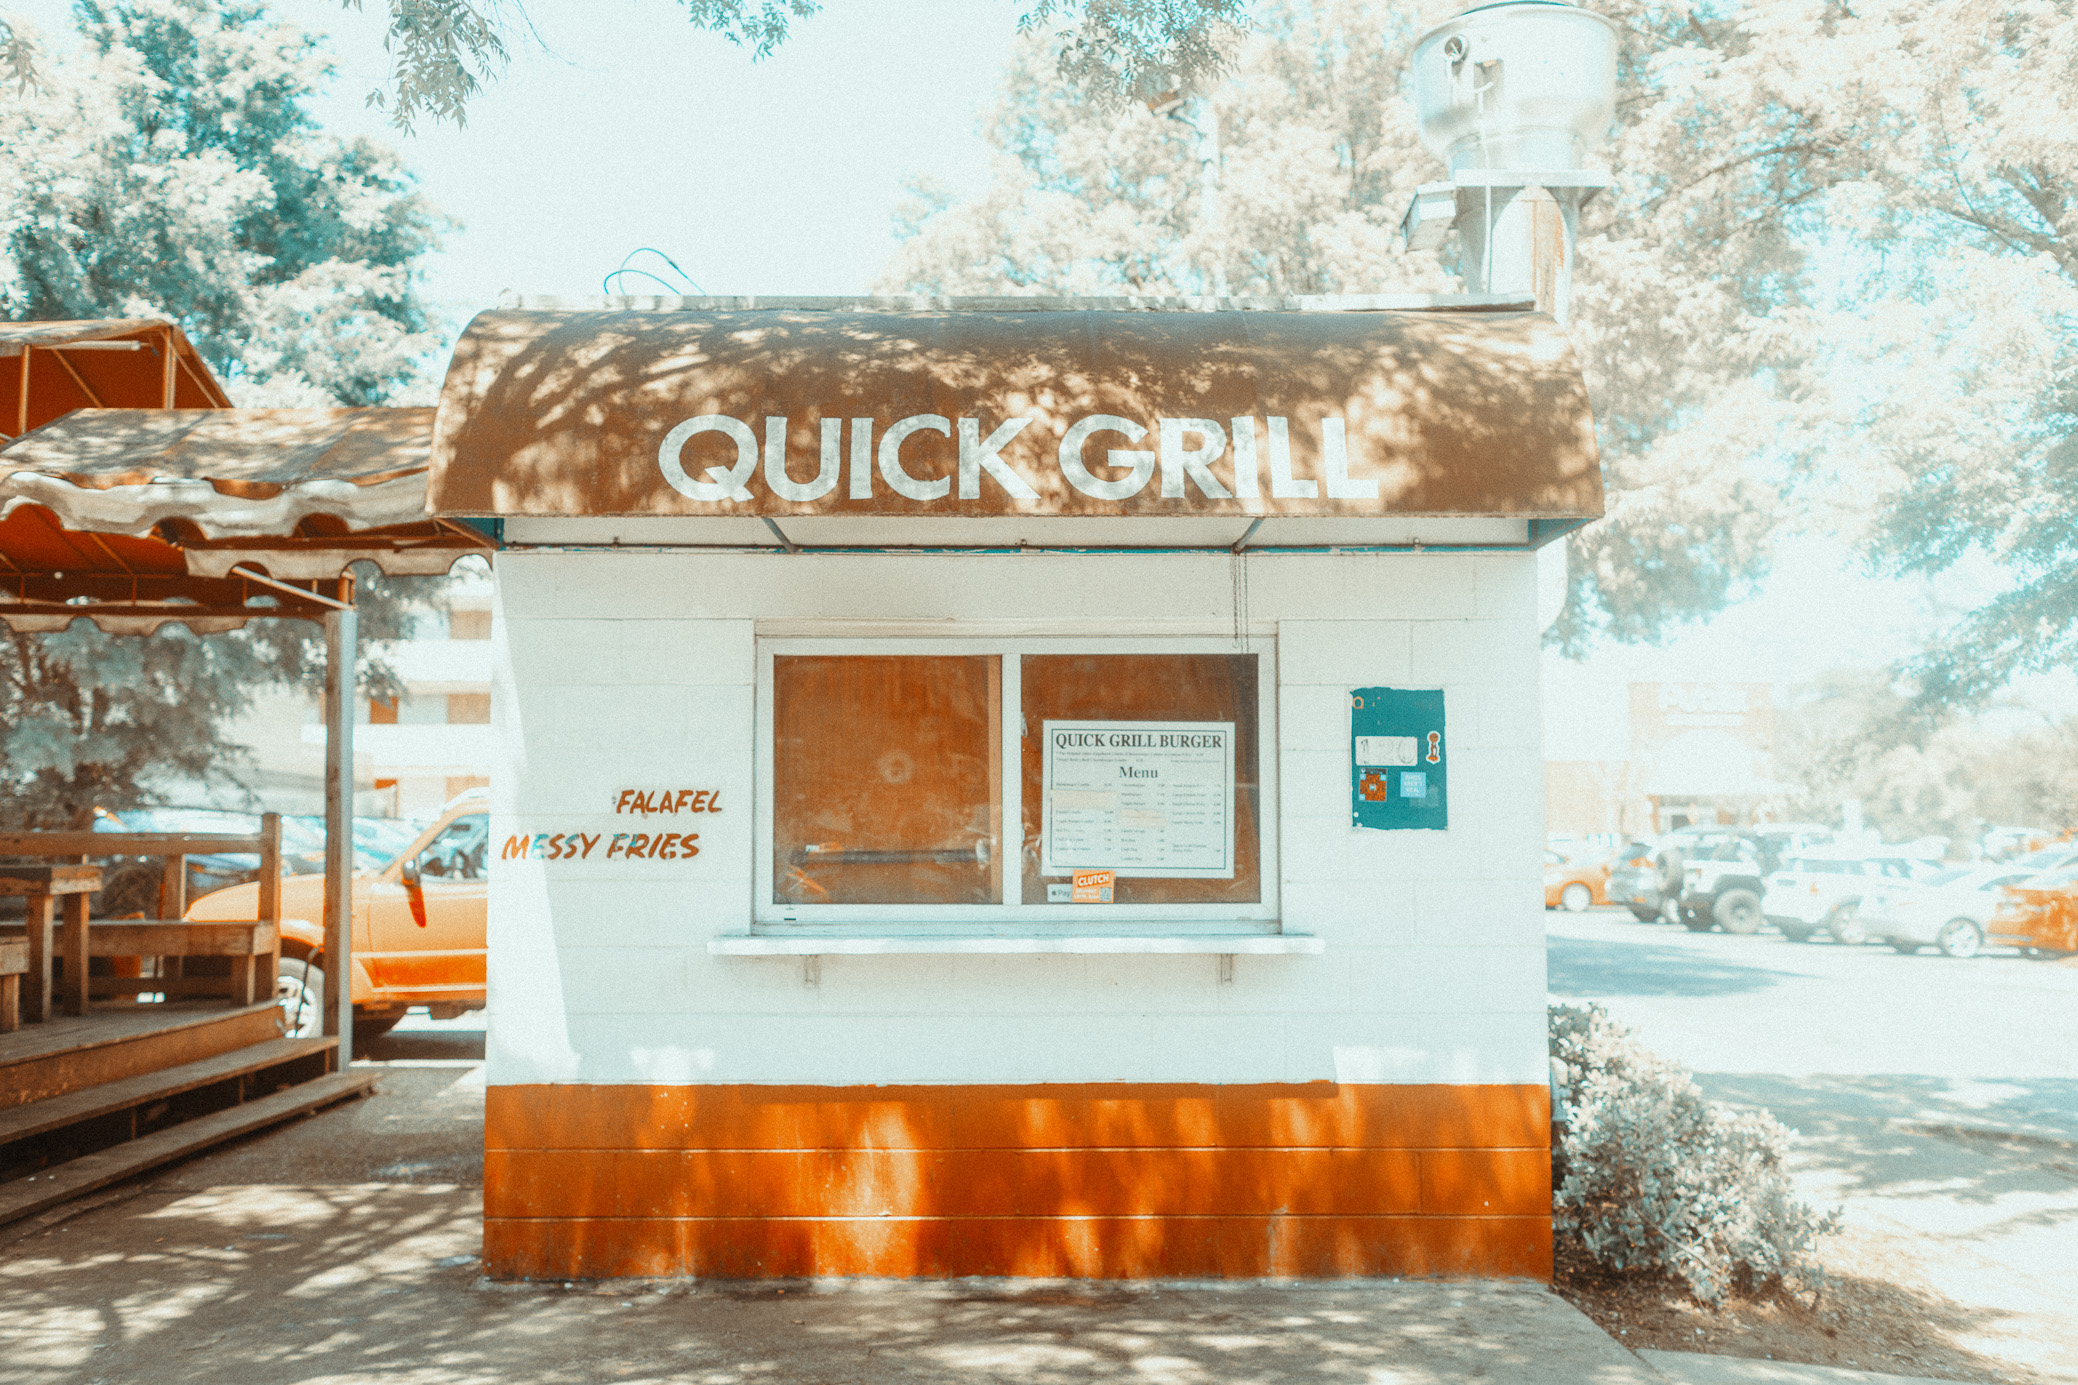 Quick Grill | Tuscaloosa, Alabama | April 11th, 2021